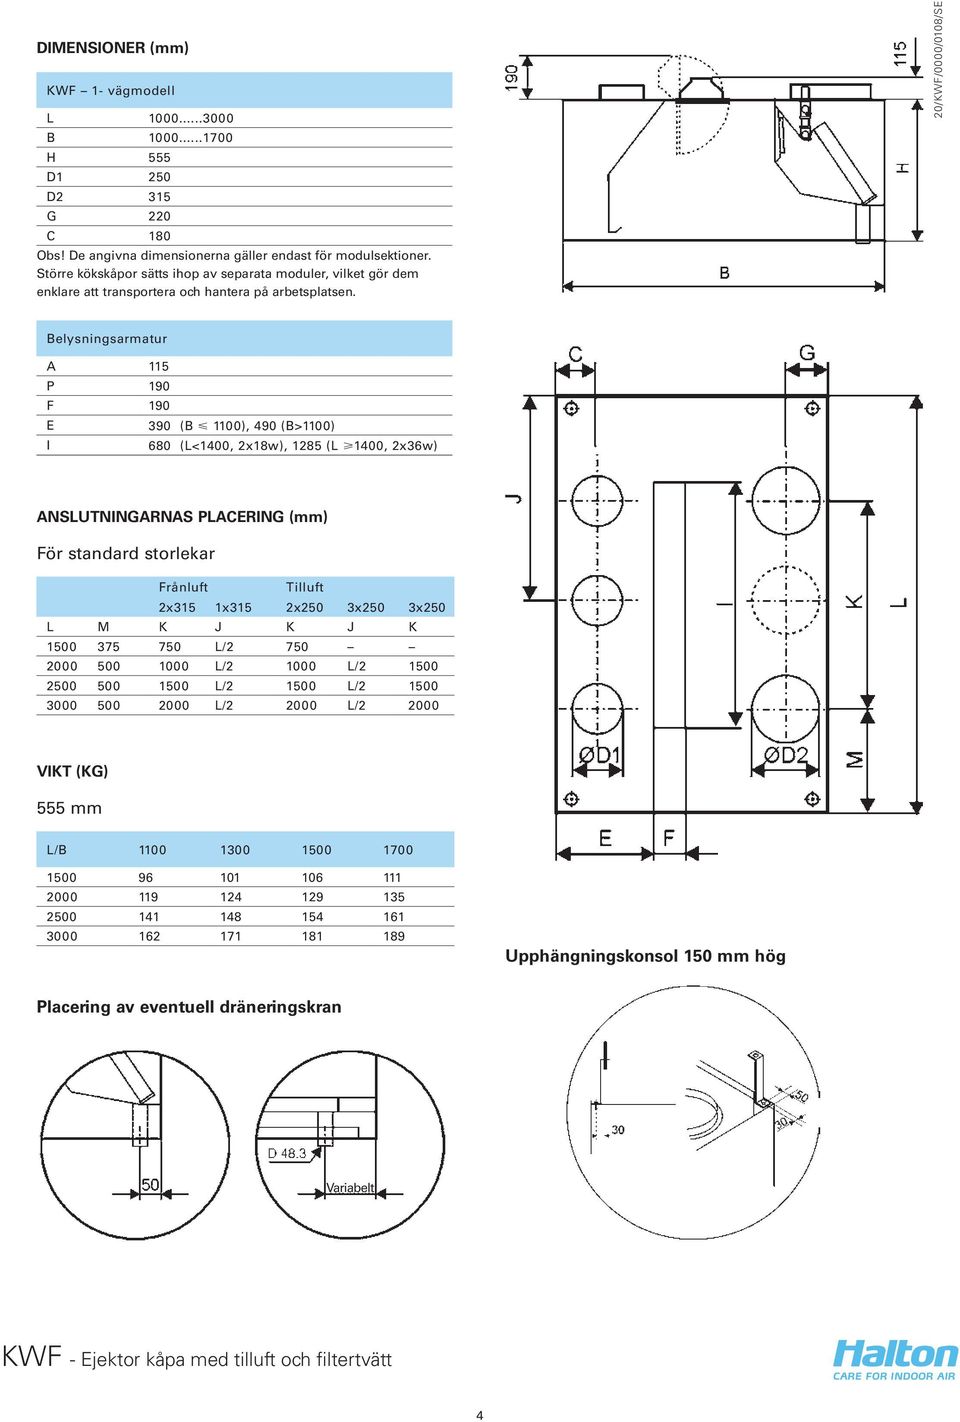 Belysningsarmatur A 115 P 190 F 190 E 390 (B < 1100), 490 (B>1100) I 680 (L<1400, 2x18w), 1285 (L >1400, 2x36w) ANSLUTNINGARNAS PLACERING (mm) För standard storlekar Frånluft Tilluft 2x315 1x315